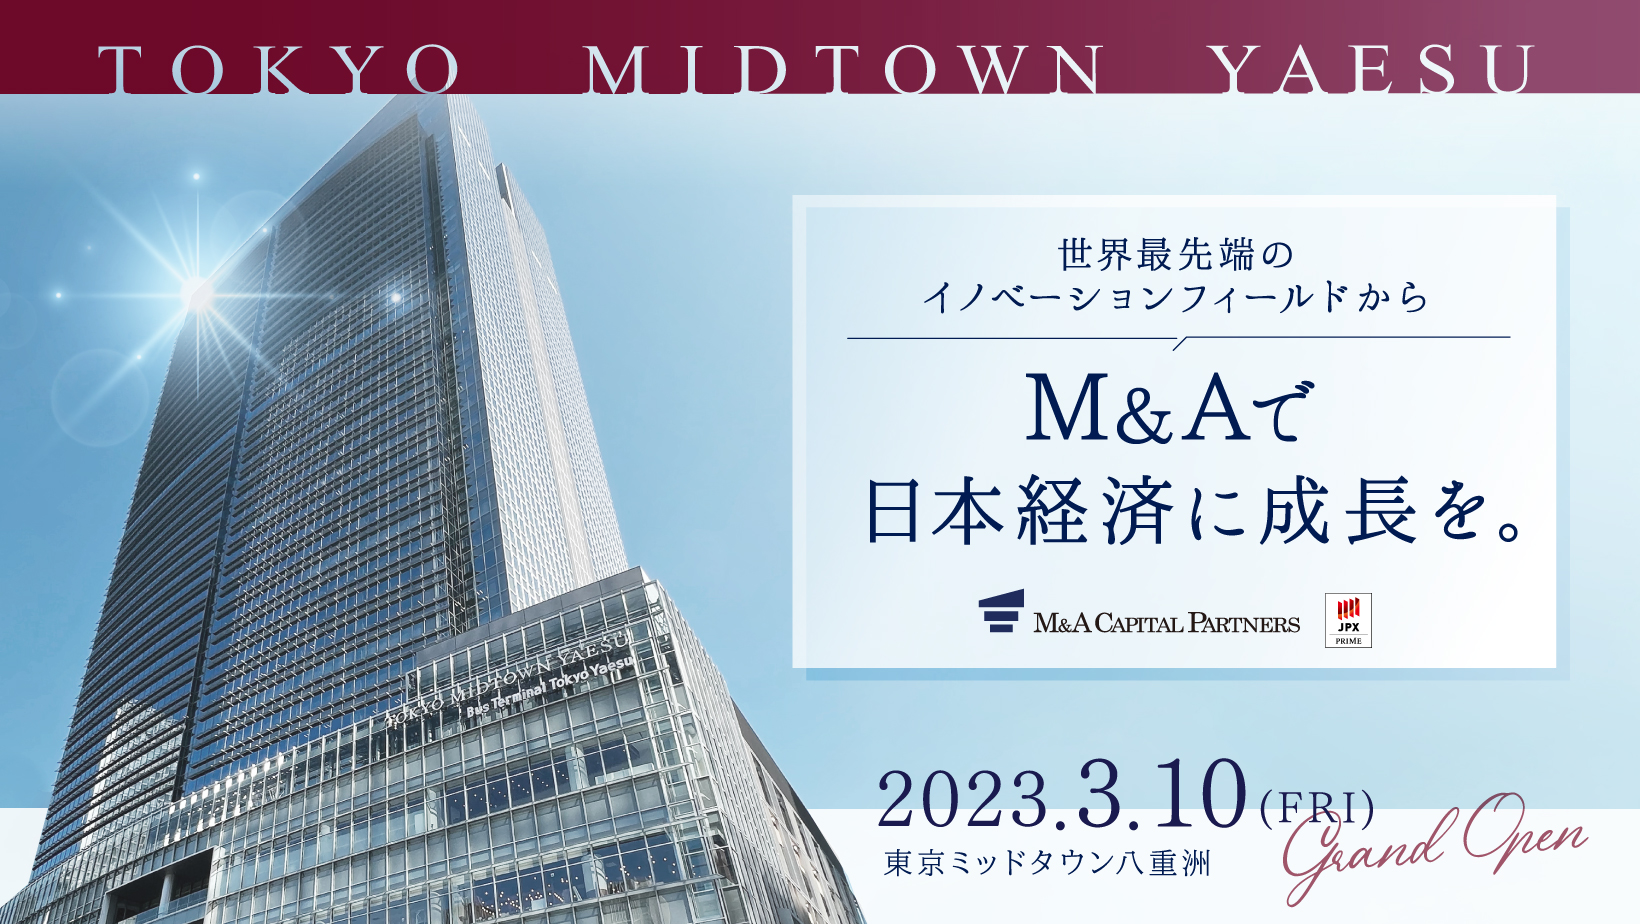 TOKYO MIDTOWN YAESU 世界最先端のイノベーションフィールドからM＆Aで日本経済に成長を。2023.3.10(FRI)GRAND OPEN